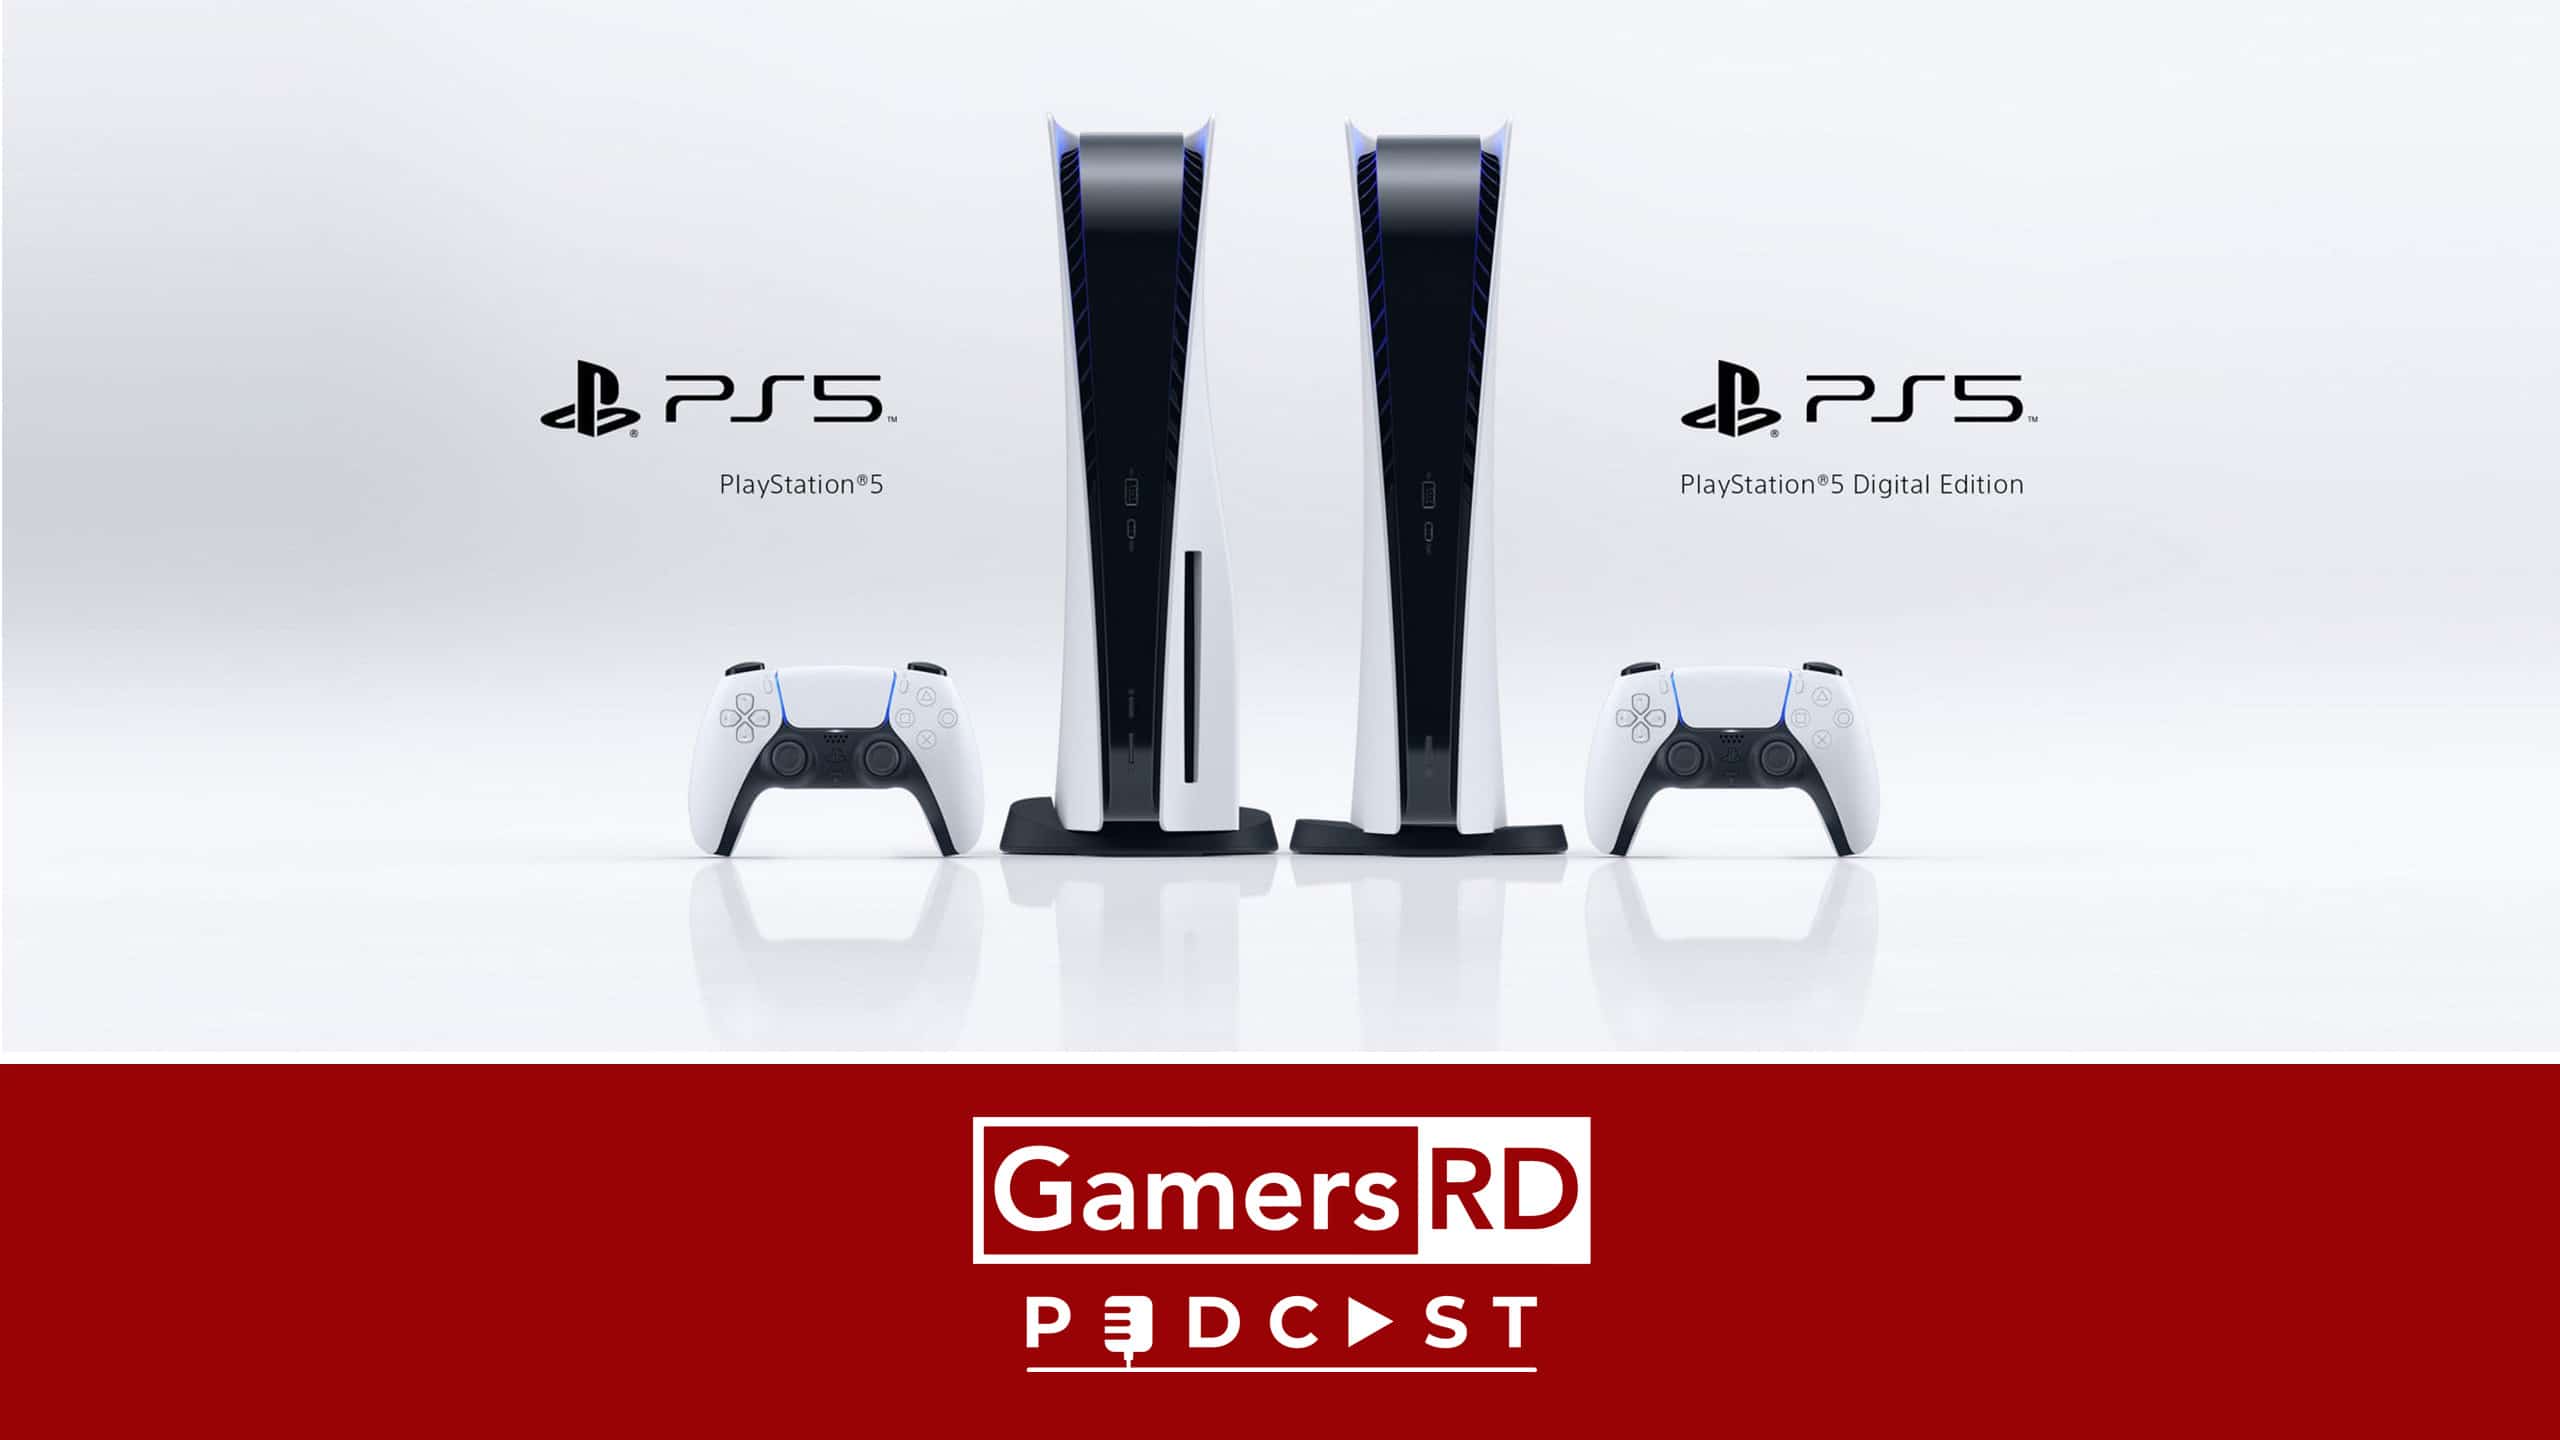 132 PS5 Showcase, Sony GamersRD Podcast